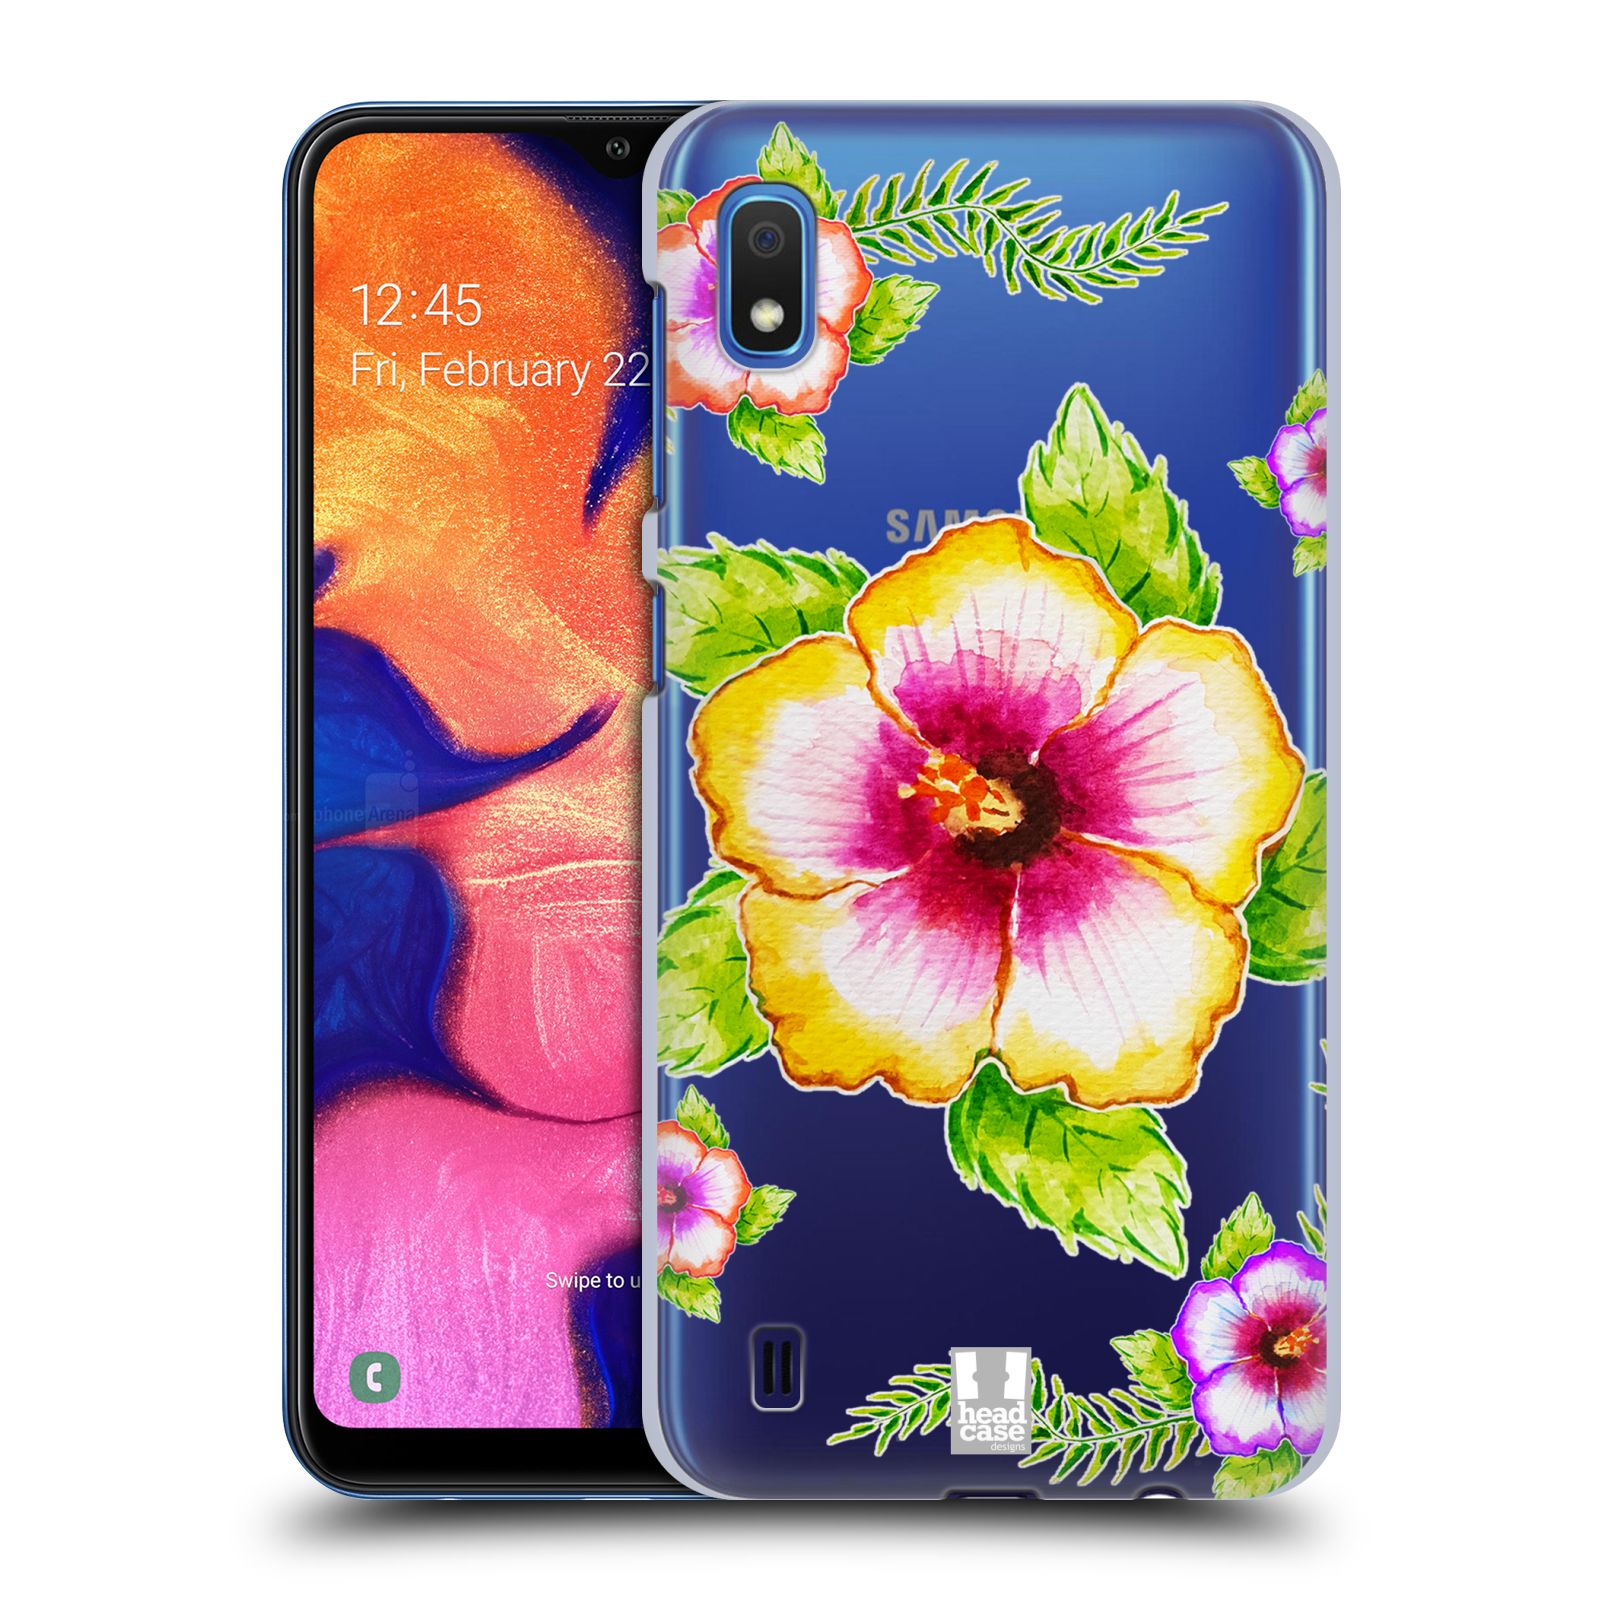 Pouzdro na mobil Samsung Galaxy A10 - HEAD CASE - Květina Ibišek vodní barvy